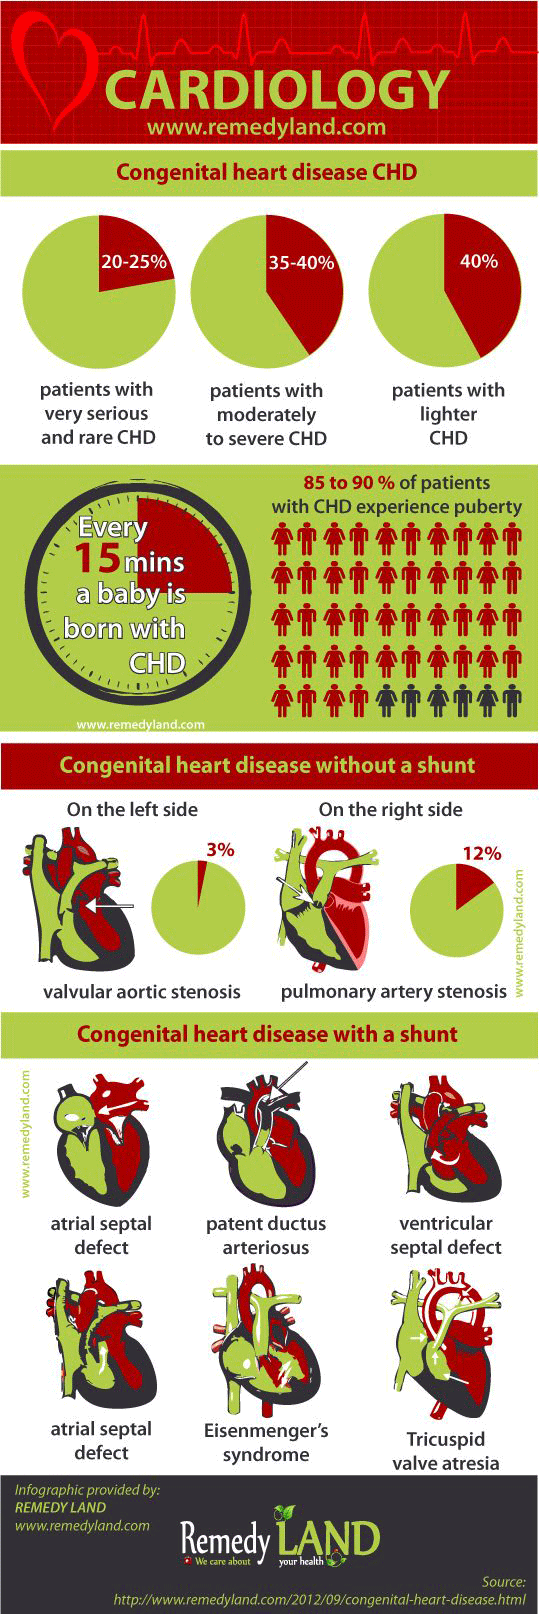 Congenital heart disease infographic